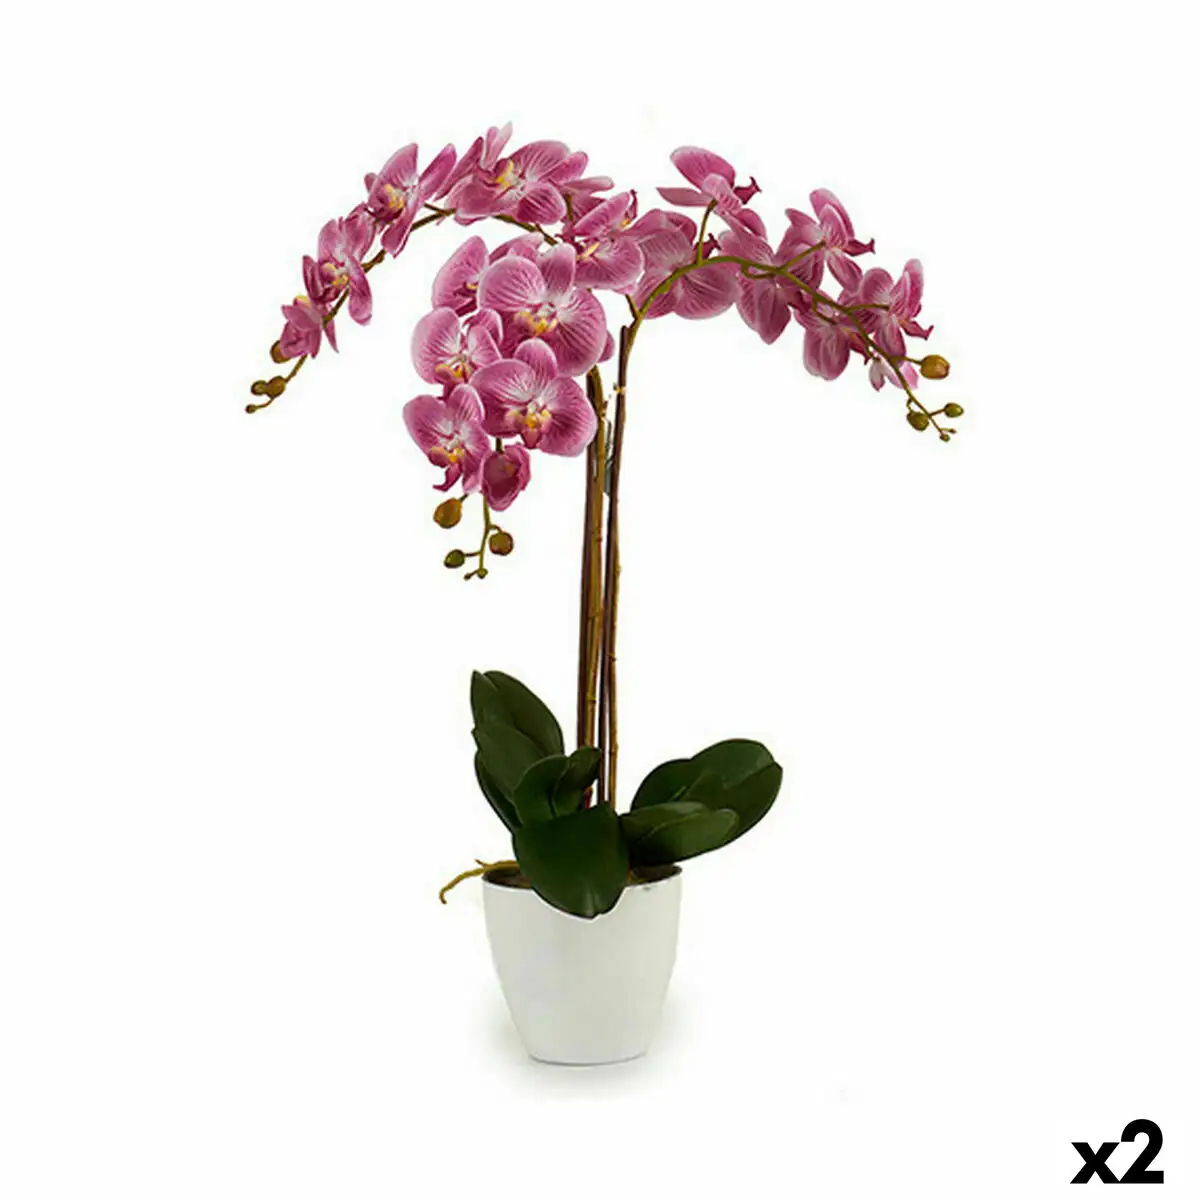 Plante decorative orchidee plastique 30 x 80 x 40 cm 2 unites _6177. Bienvenue chez DIAYTAR SENEGAL - Votre Porte d'Accès à la Diversité. Découvrez notre boutique en ligne et choisissez parmi une pléthore d'articles qui célèbrent la richesse culturelle du Sénégal et au-delà.